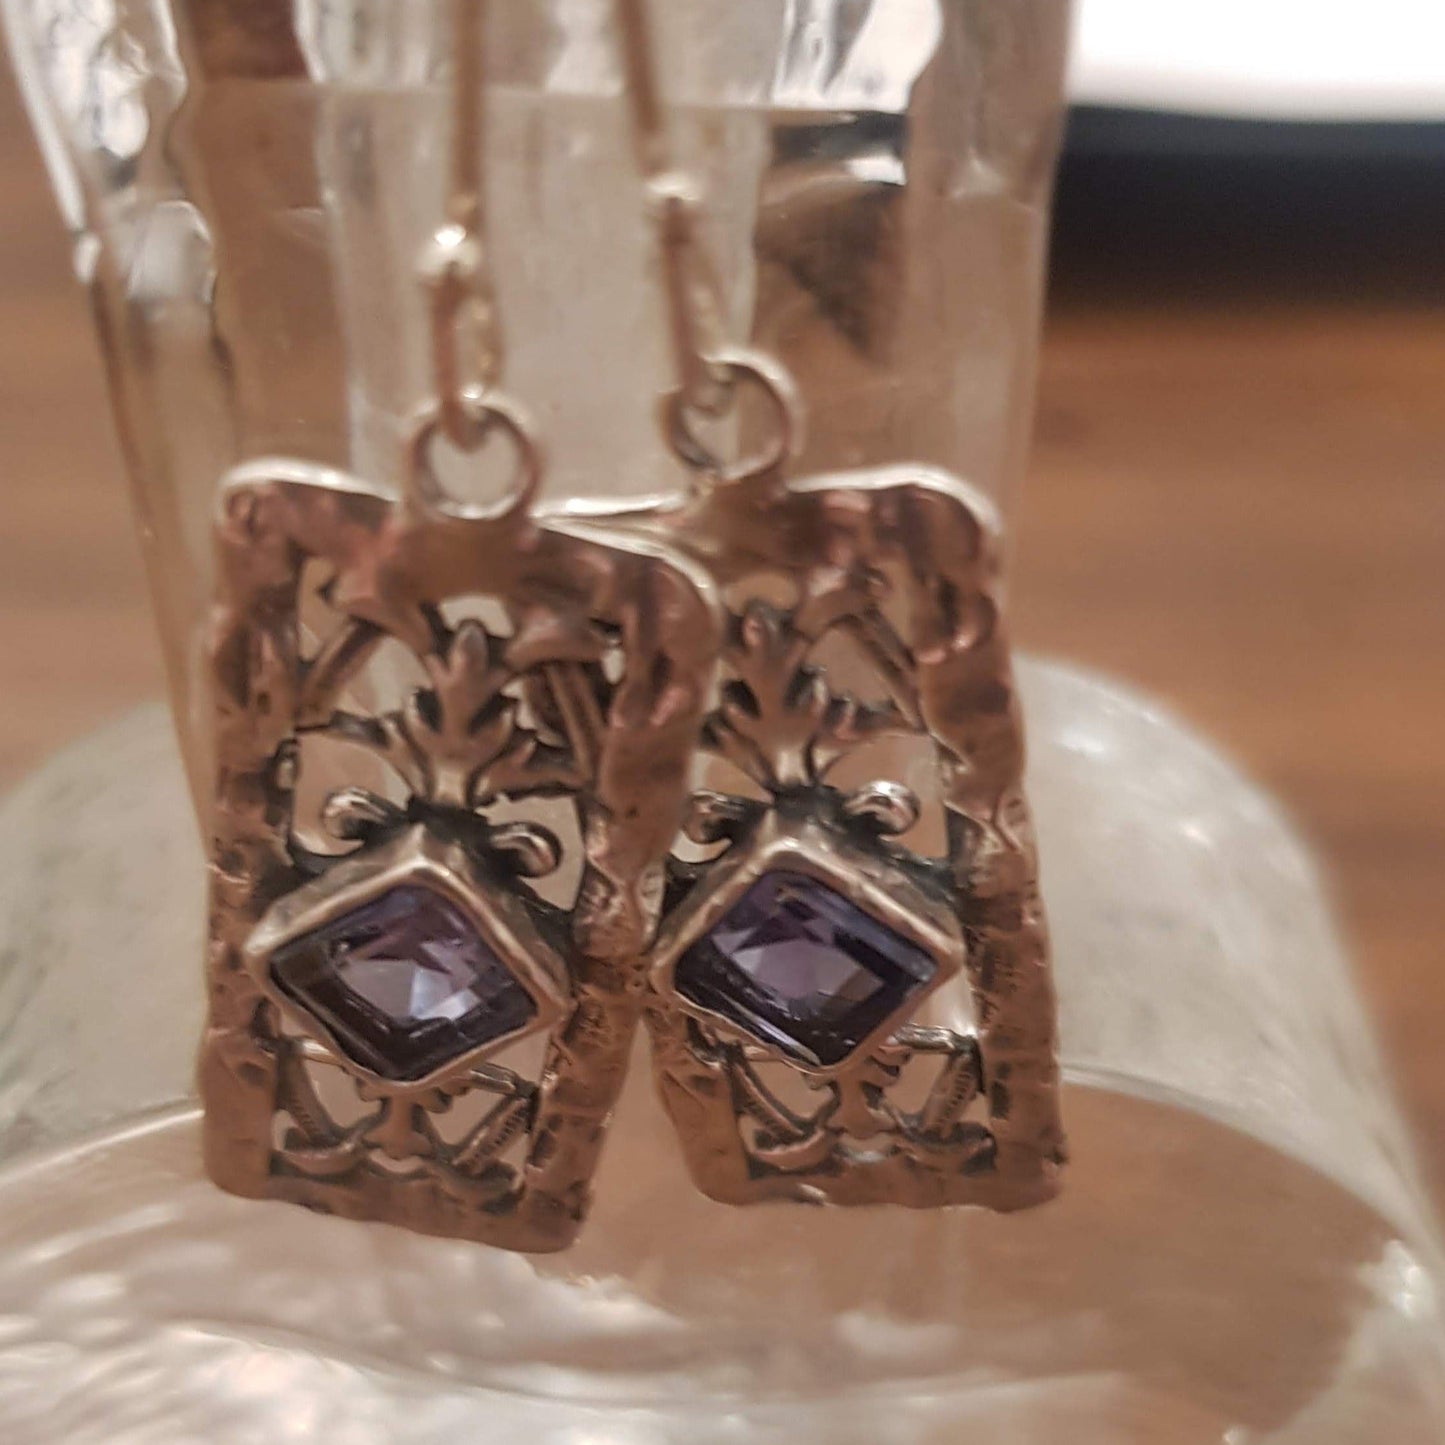 Bluenoemi Jewelry Earrings Opal sterling silver earrings.